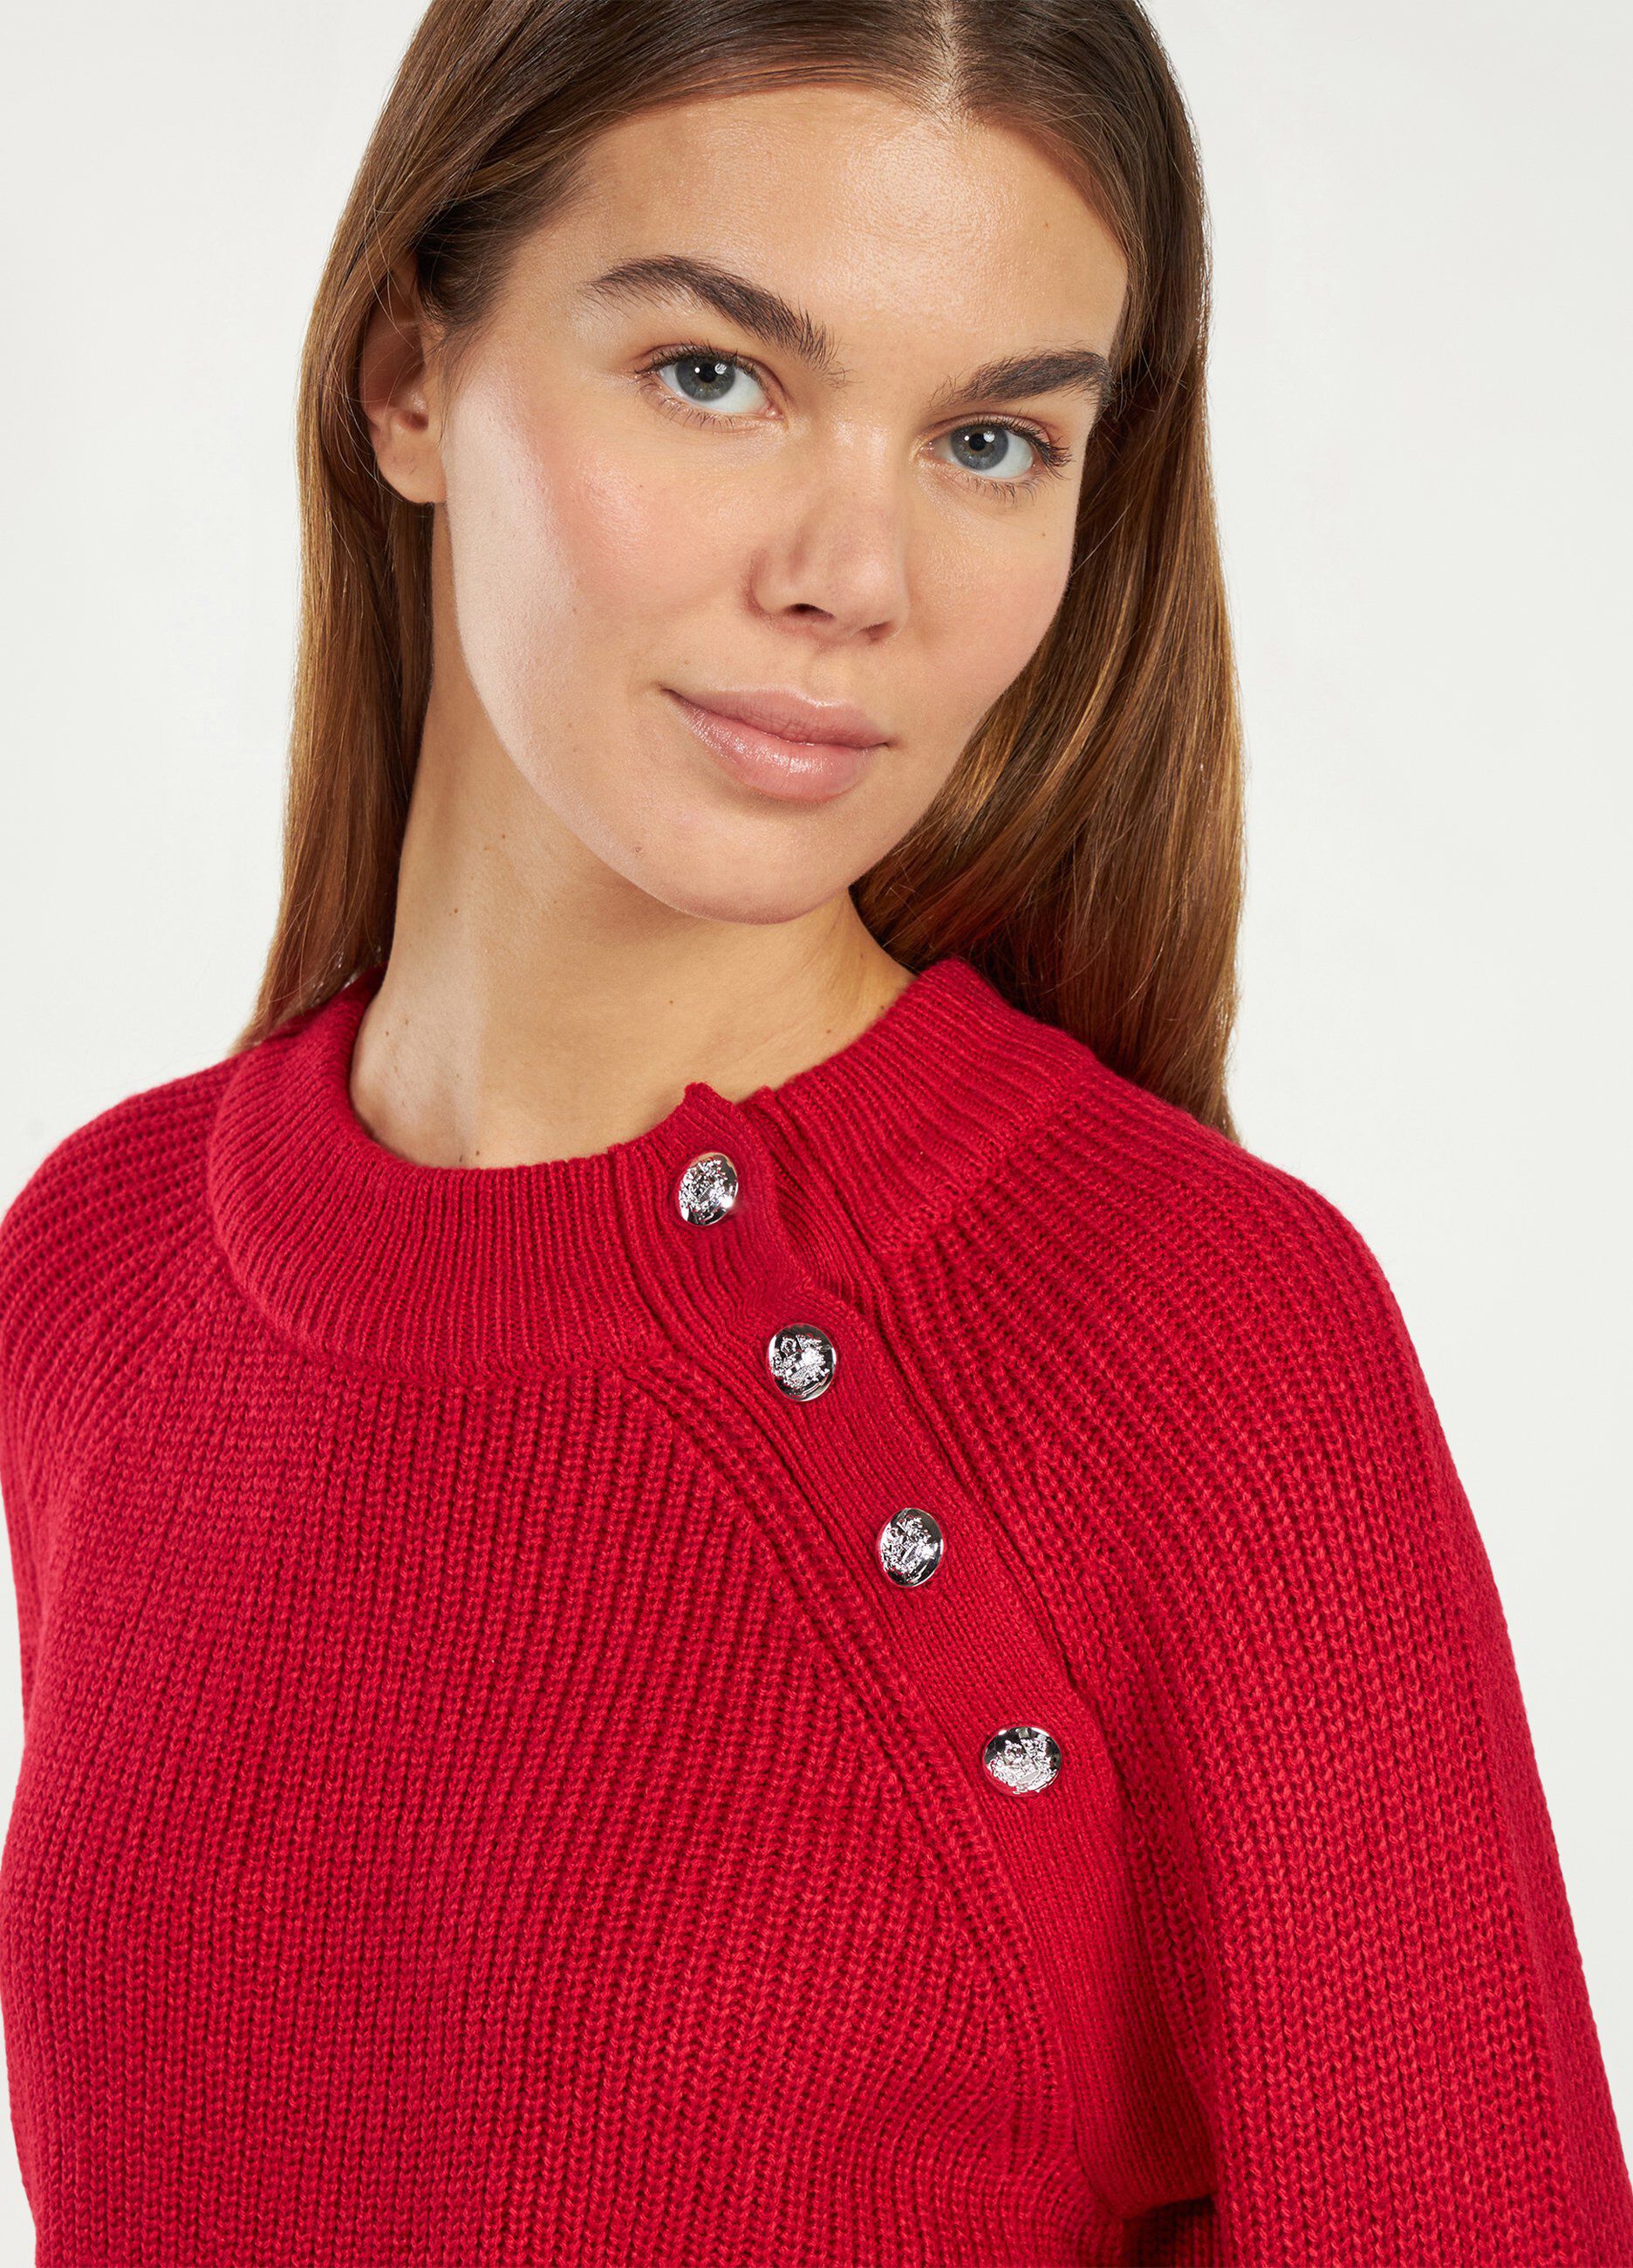 Maglione tricot con bottoni donna_0